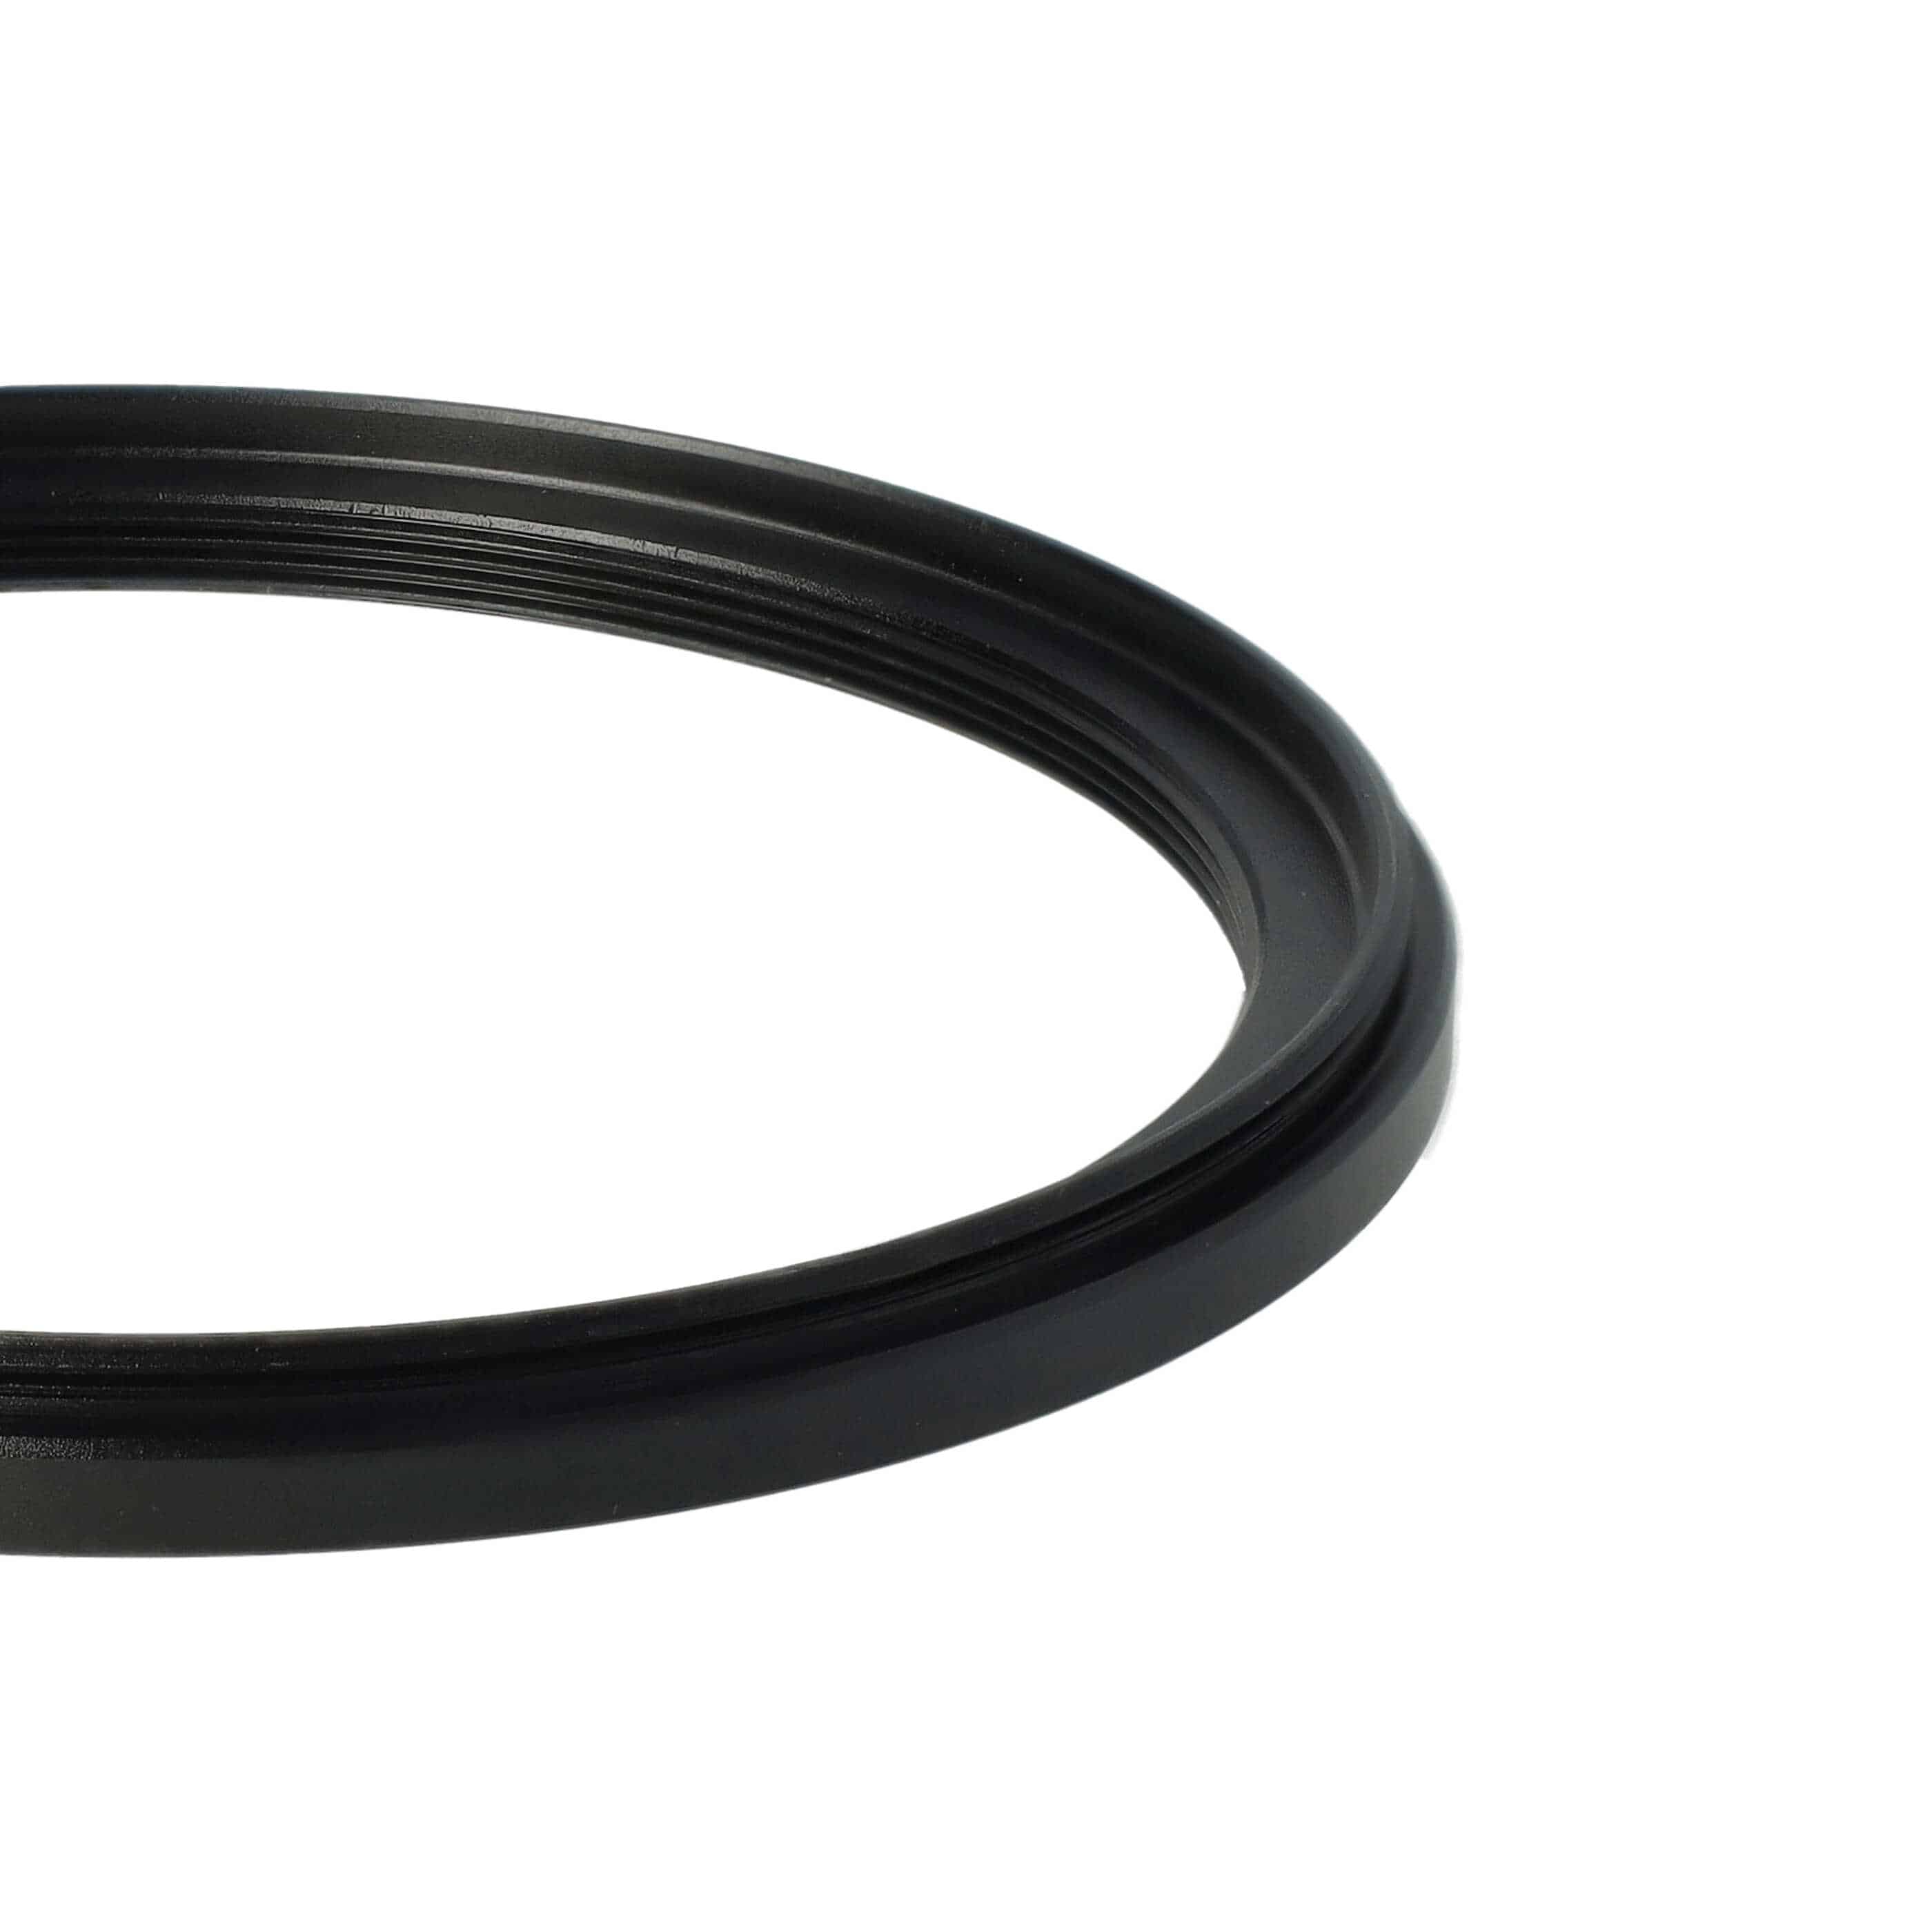 Redukcja filtrowa adapter Step-Down 82 mm - 72 mm pasująca do obiektywu - metal, czarny